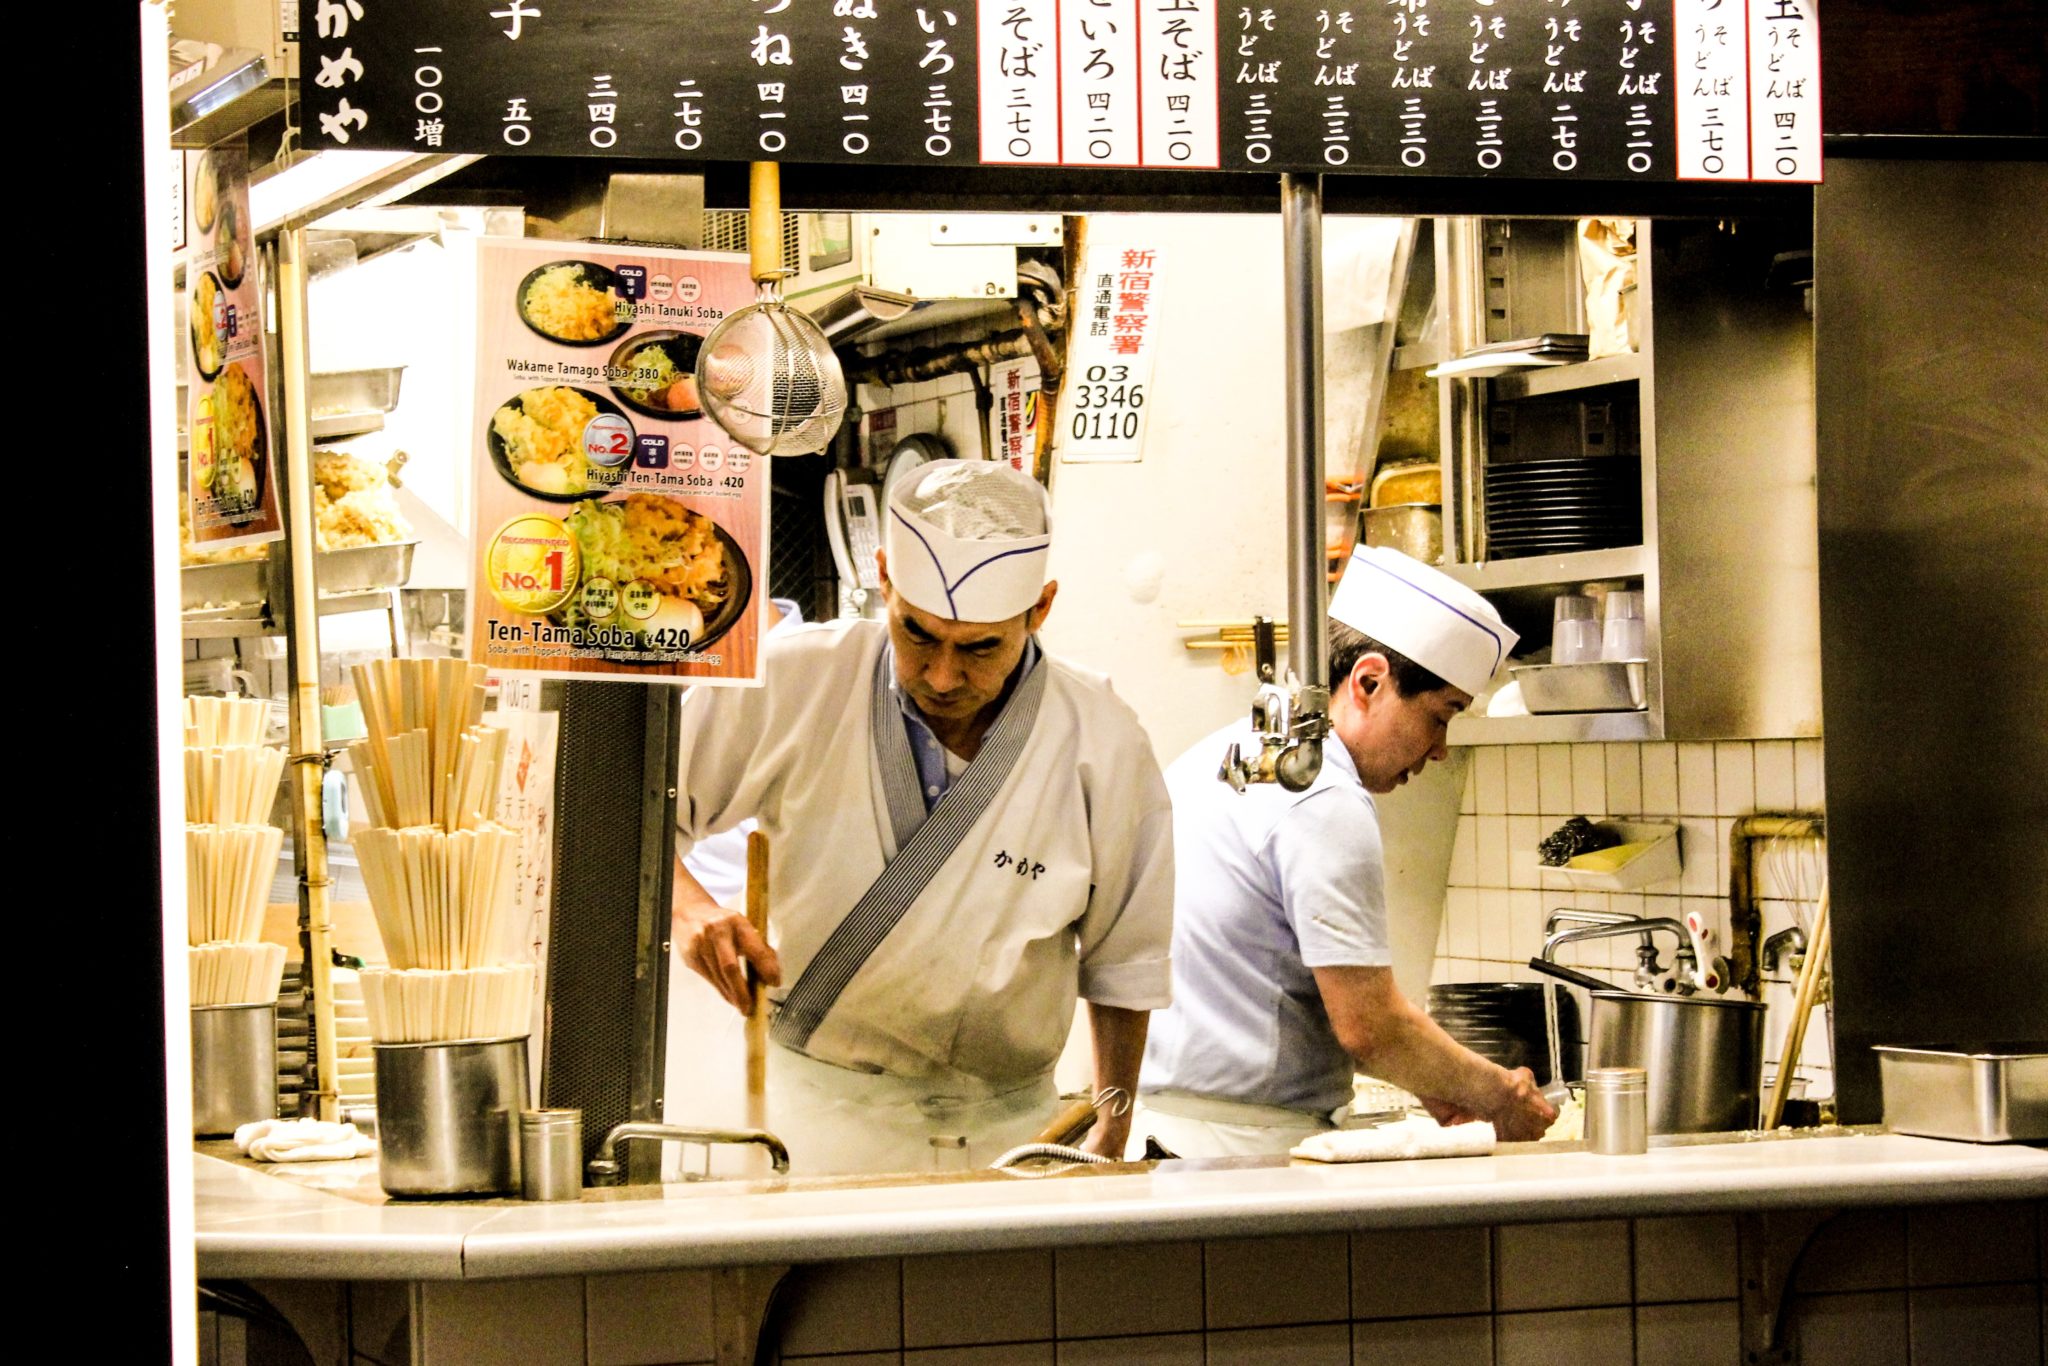 Japonia, Shinjuku, Tokio, restuaracja, kanjpka, udon, soba, ramen, zupa, jedzenie, kolacja, obiad, posiłek, kucharze, mężczyźni, szef kuchni, garnki, menu